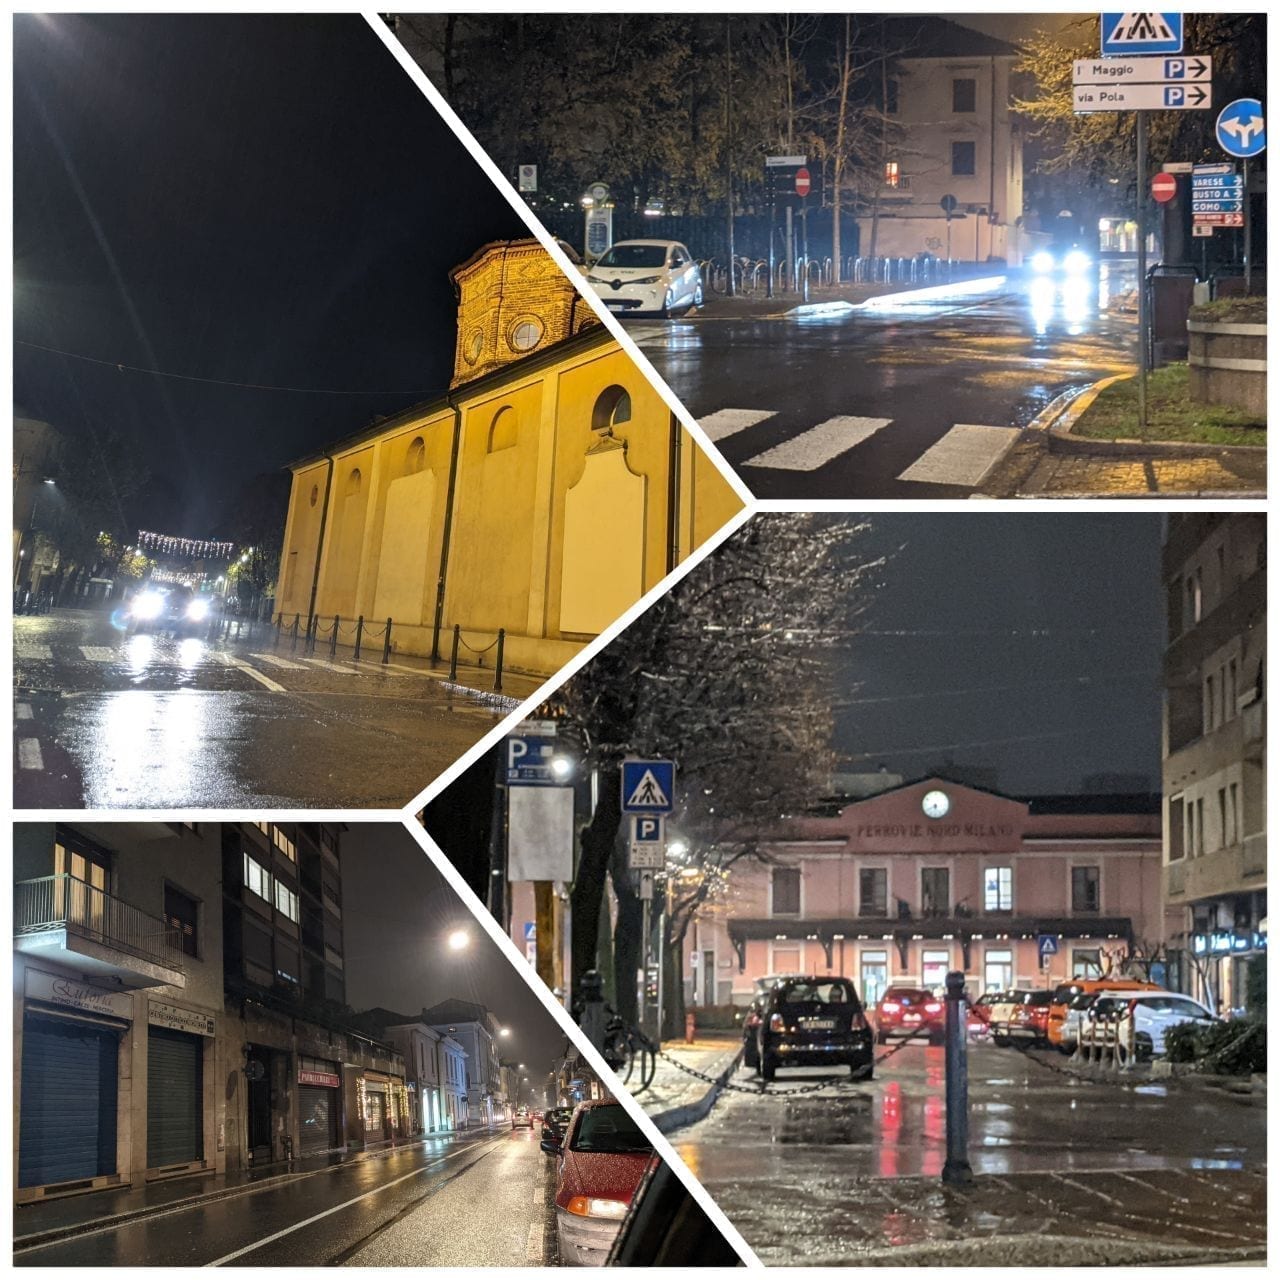 “Perchè via San Giuseppe e piazza Cadorna son senza luminarie?”: la risposta del Duc